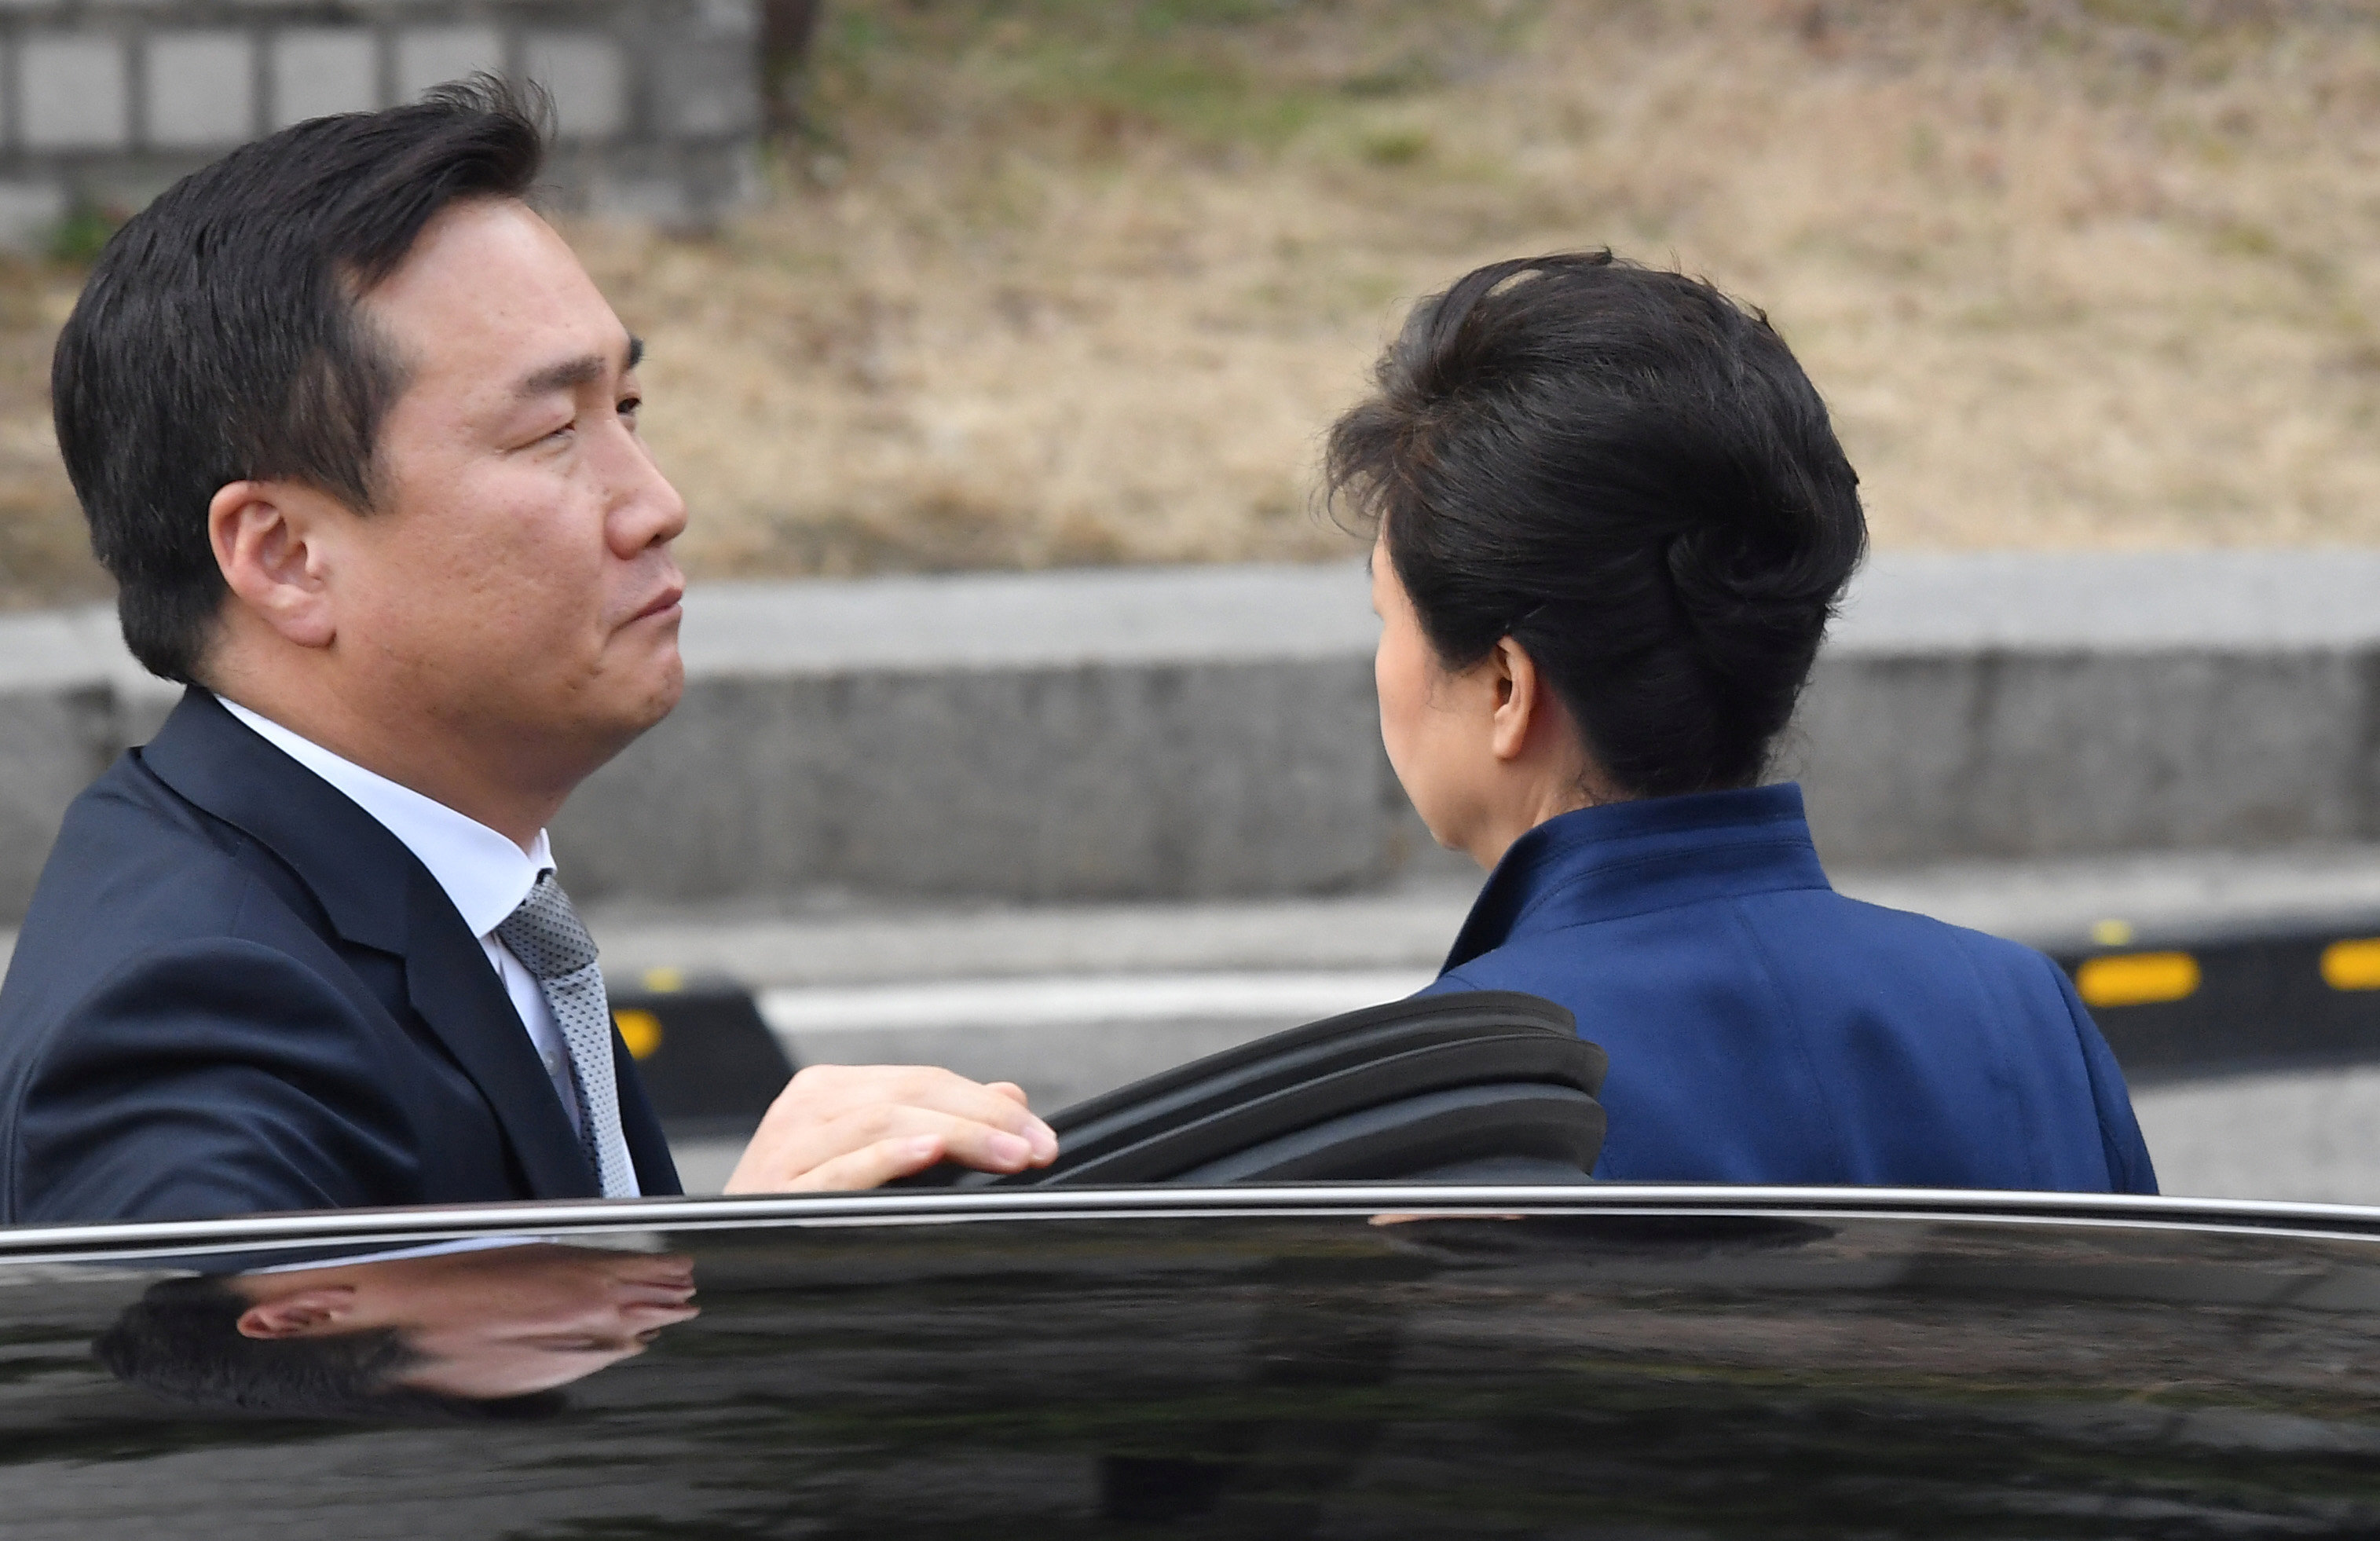 لحظة وصول رئيسة كوريا الجنوبية السابقة إلى المحكمة